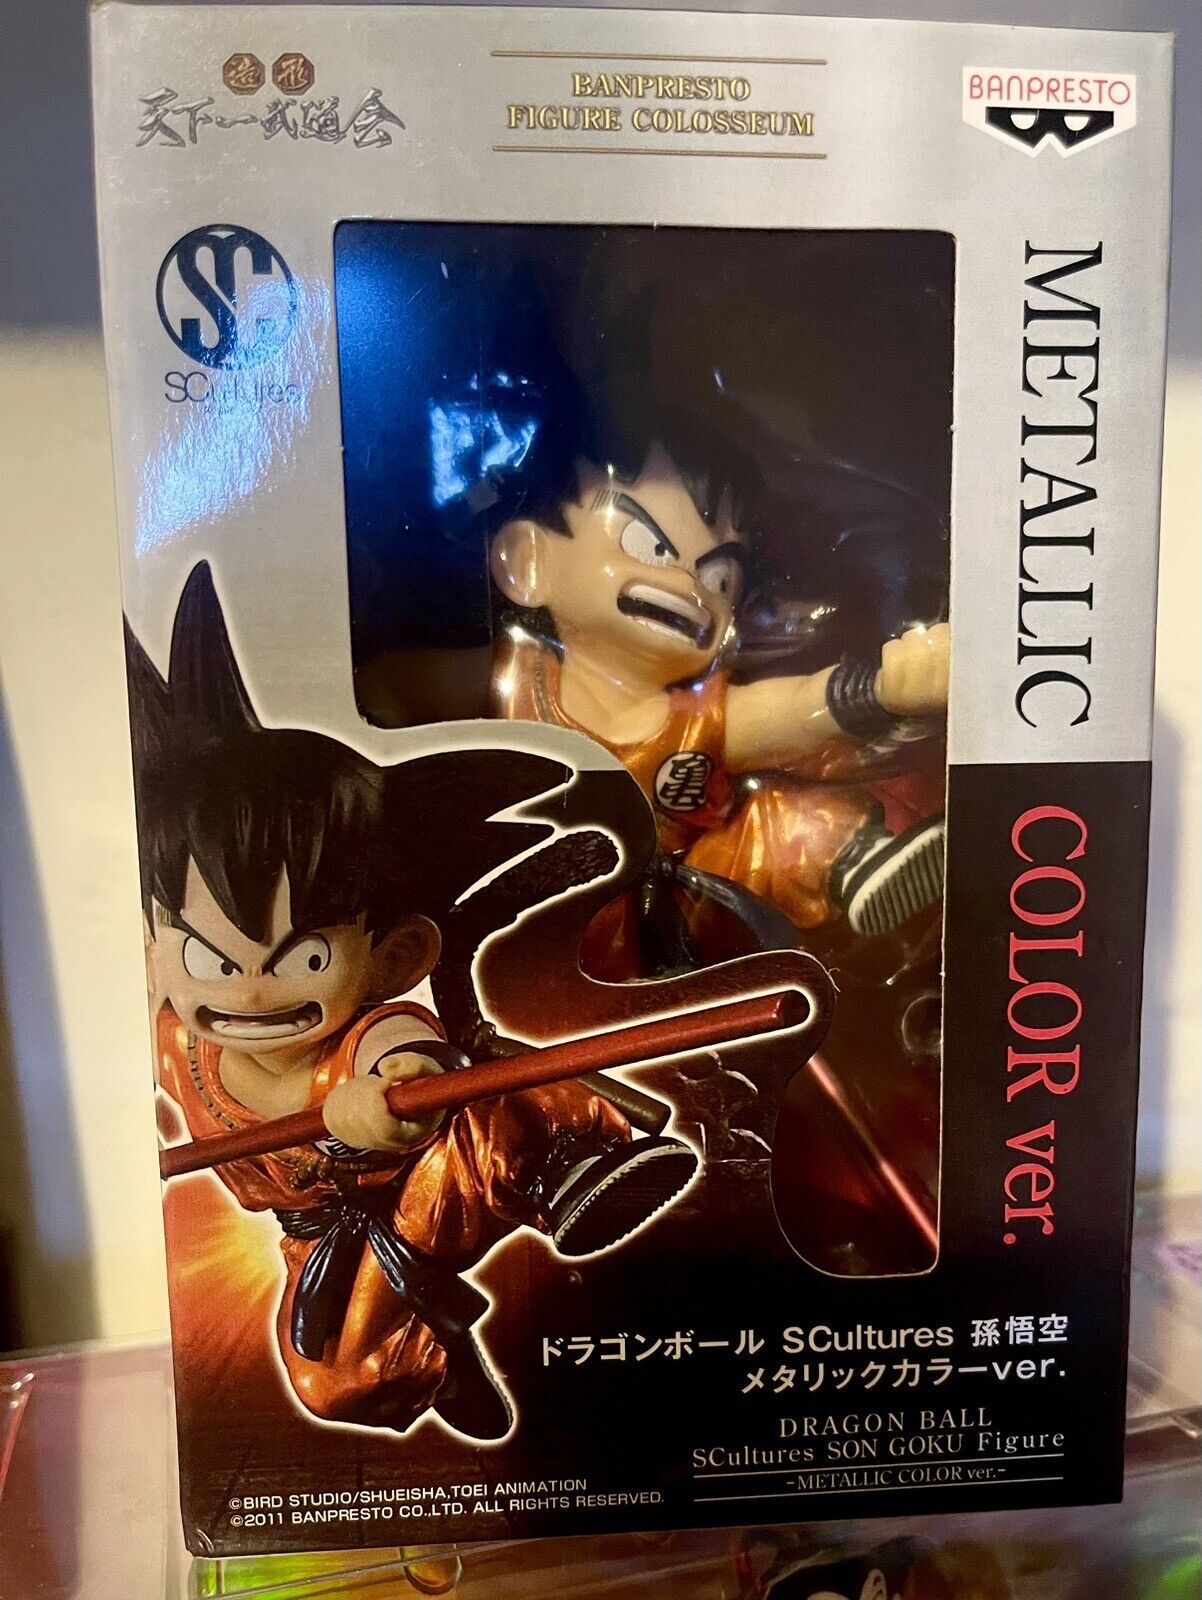 2017 Banpresto Dragon Ball SCultures Son Goku Figure Metallic Color Version Rare